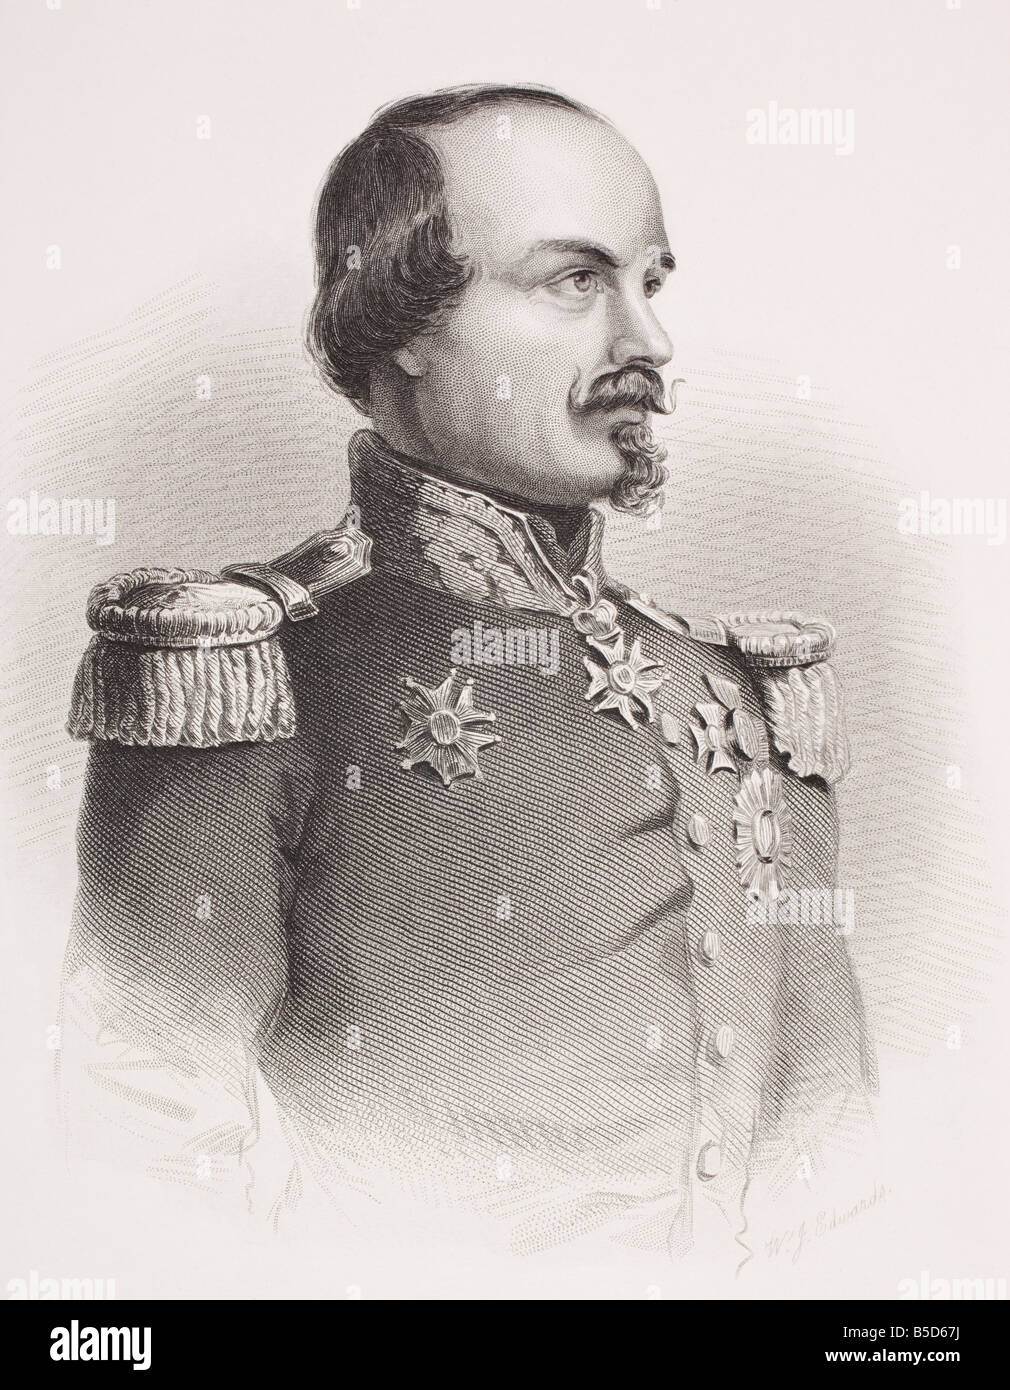 Francois Certain Canrobert, 1809 - 1895. Marschall von Frankreich. Aus dem Buch Galerie historischer Porträts, erschienen um 1880. Stockfoto